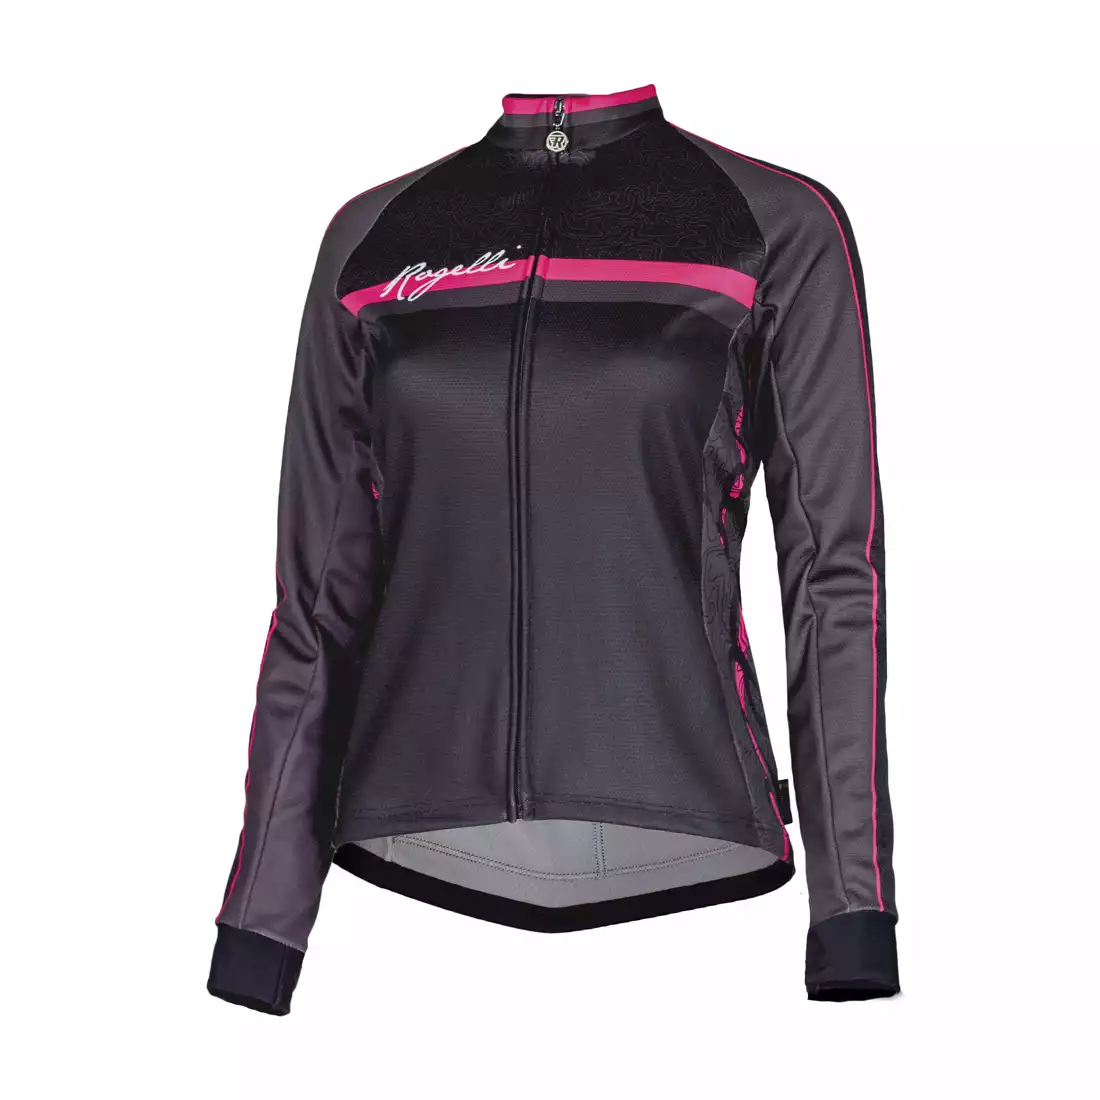 ROGELLI MANICA ROSA 010.137 damska bluza rowerowa, czarno-różowa